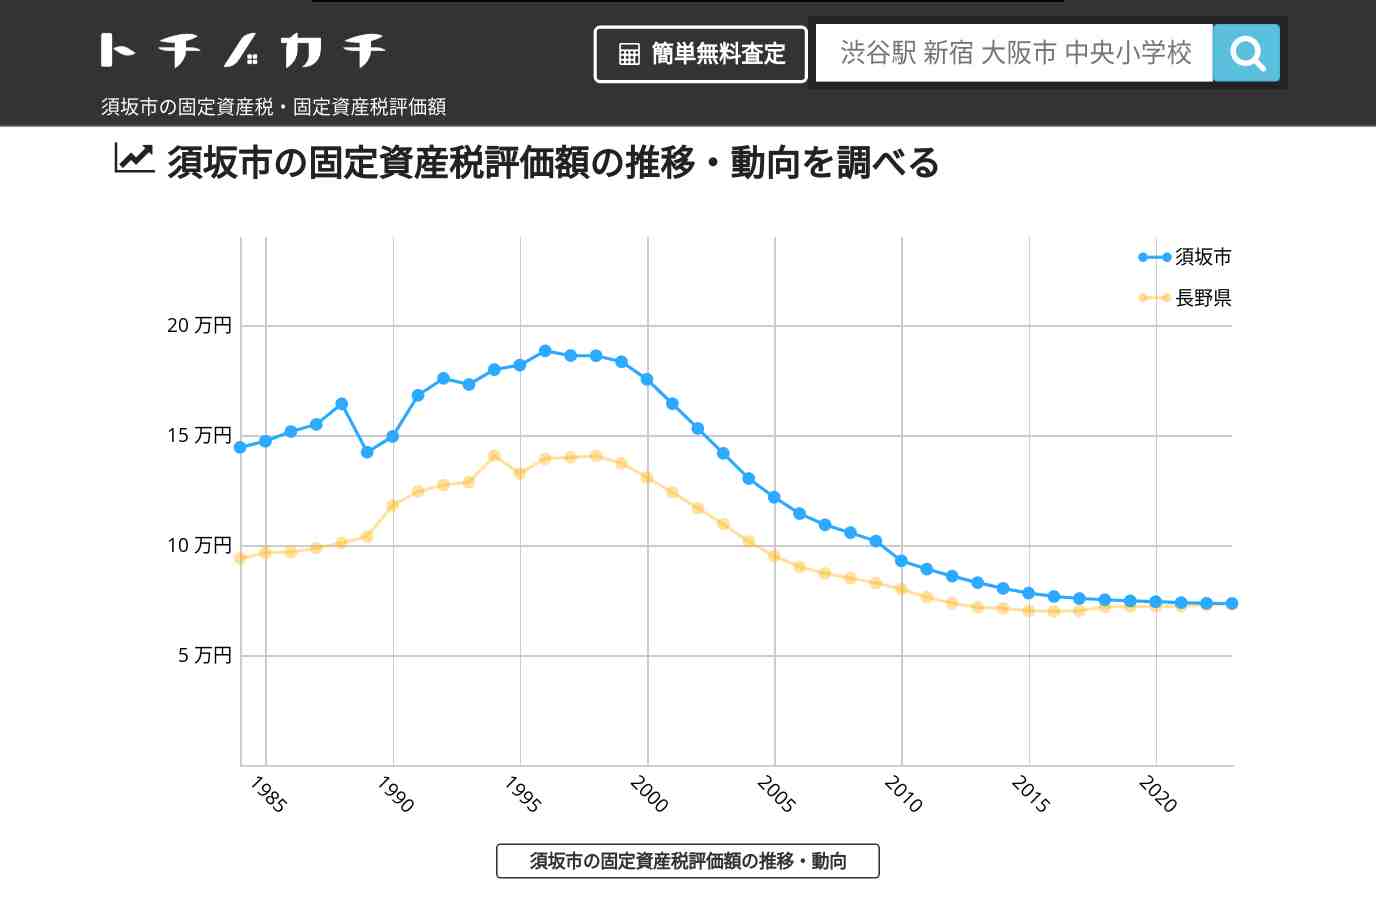 日滝小学校(長野県 須坂市)周辺の固定資産税・固定資産税評価額 | トチノカチ